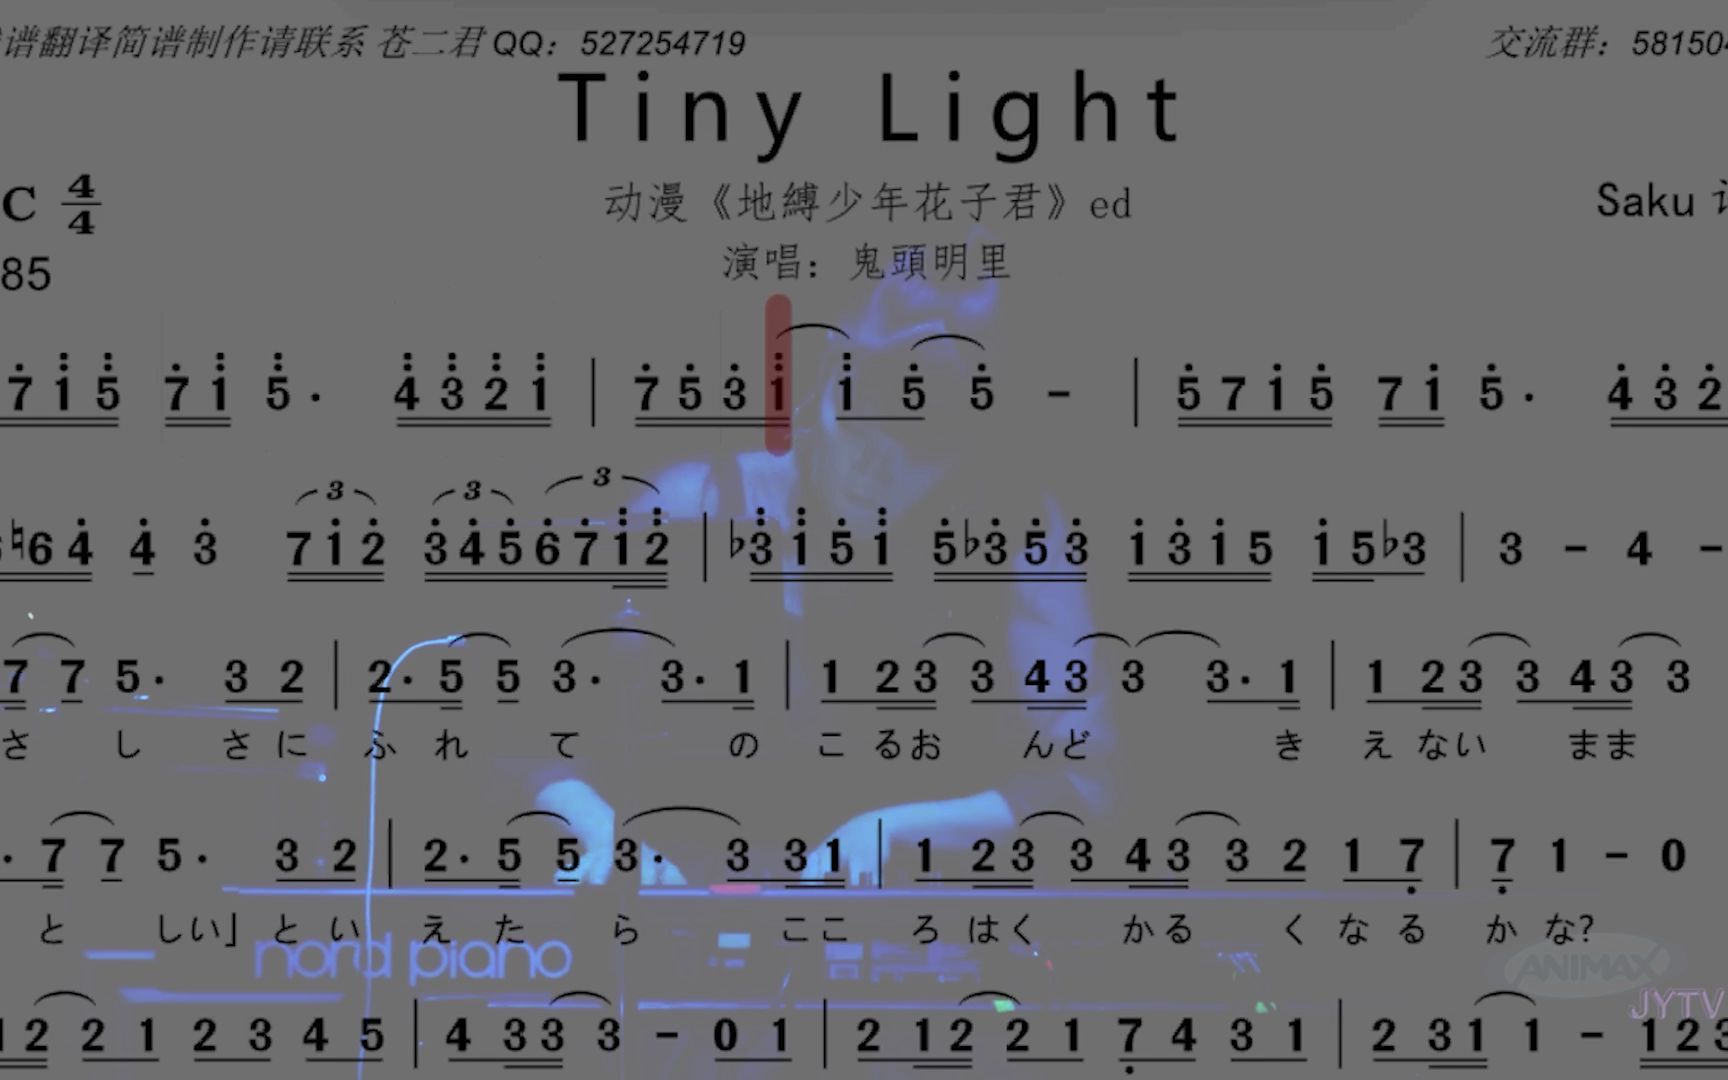 【动态曲谱】《地缚少年花子君》片尾曲《tiny light》